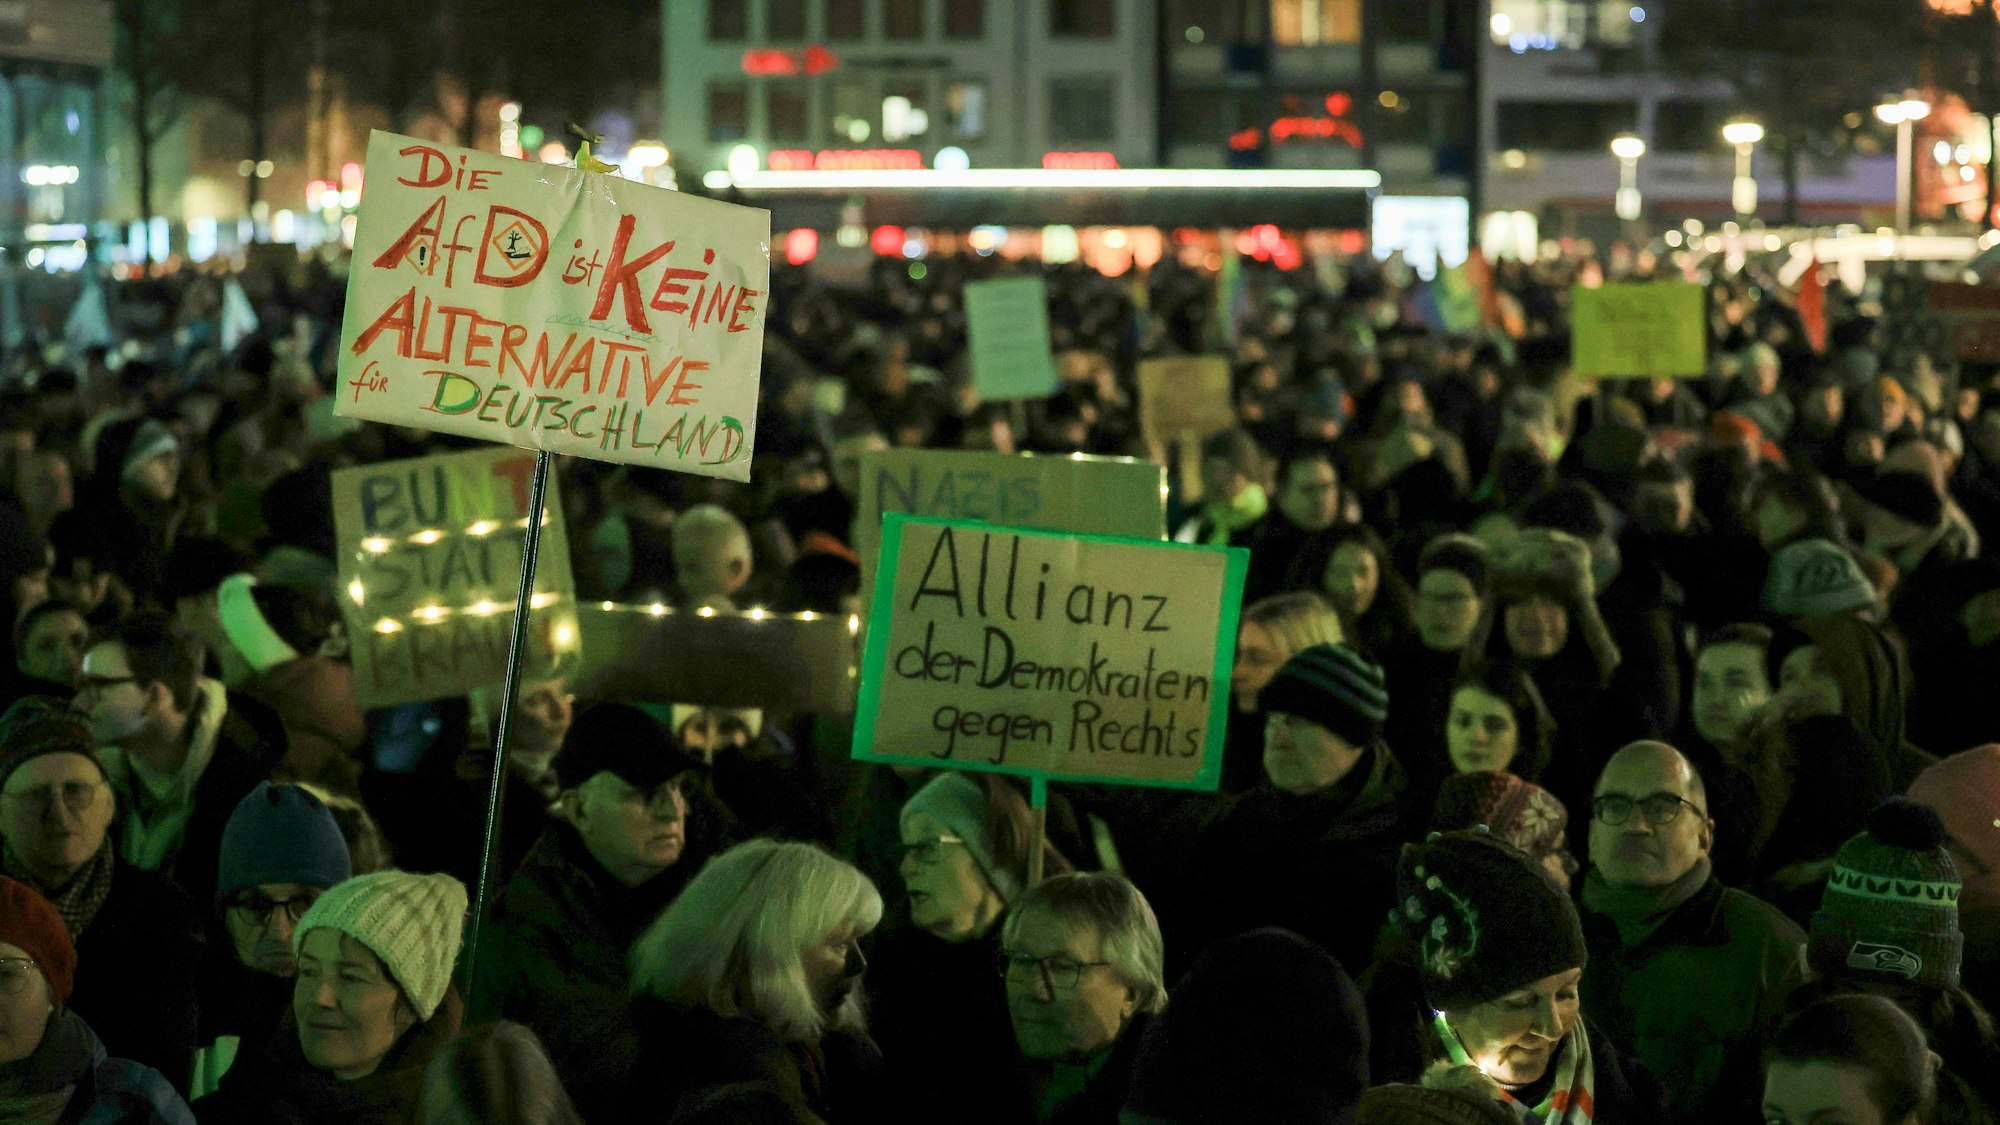 Am 16. Januar fand auf dem Kölner Heumarkt eine Kundgebung mit dem Slogan „Gemeinsam gegen den Rechtsruck“ statt. Demonstranten halten Plakate hoch mit den Schriftzügen „Die AfD ist keine Alternative für Deutschland“ und „Allianz der Demokarten gegen Rechts“.